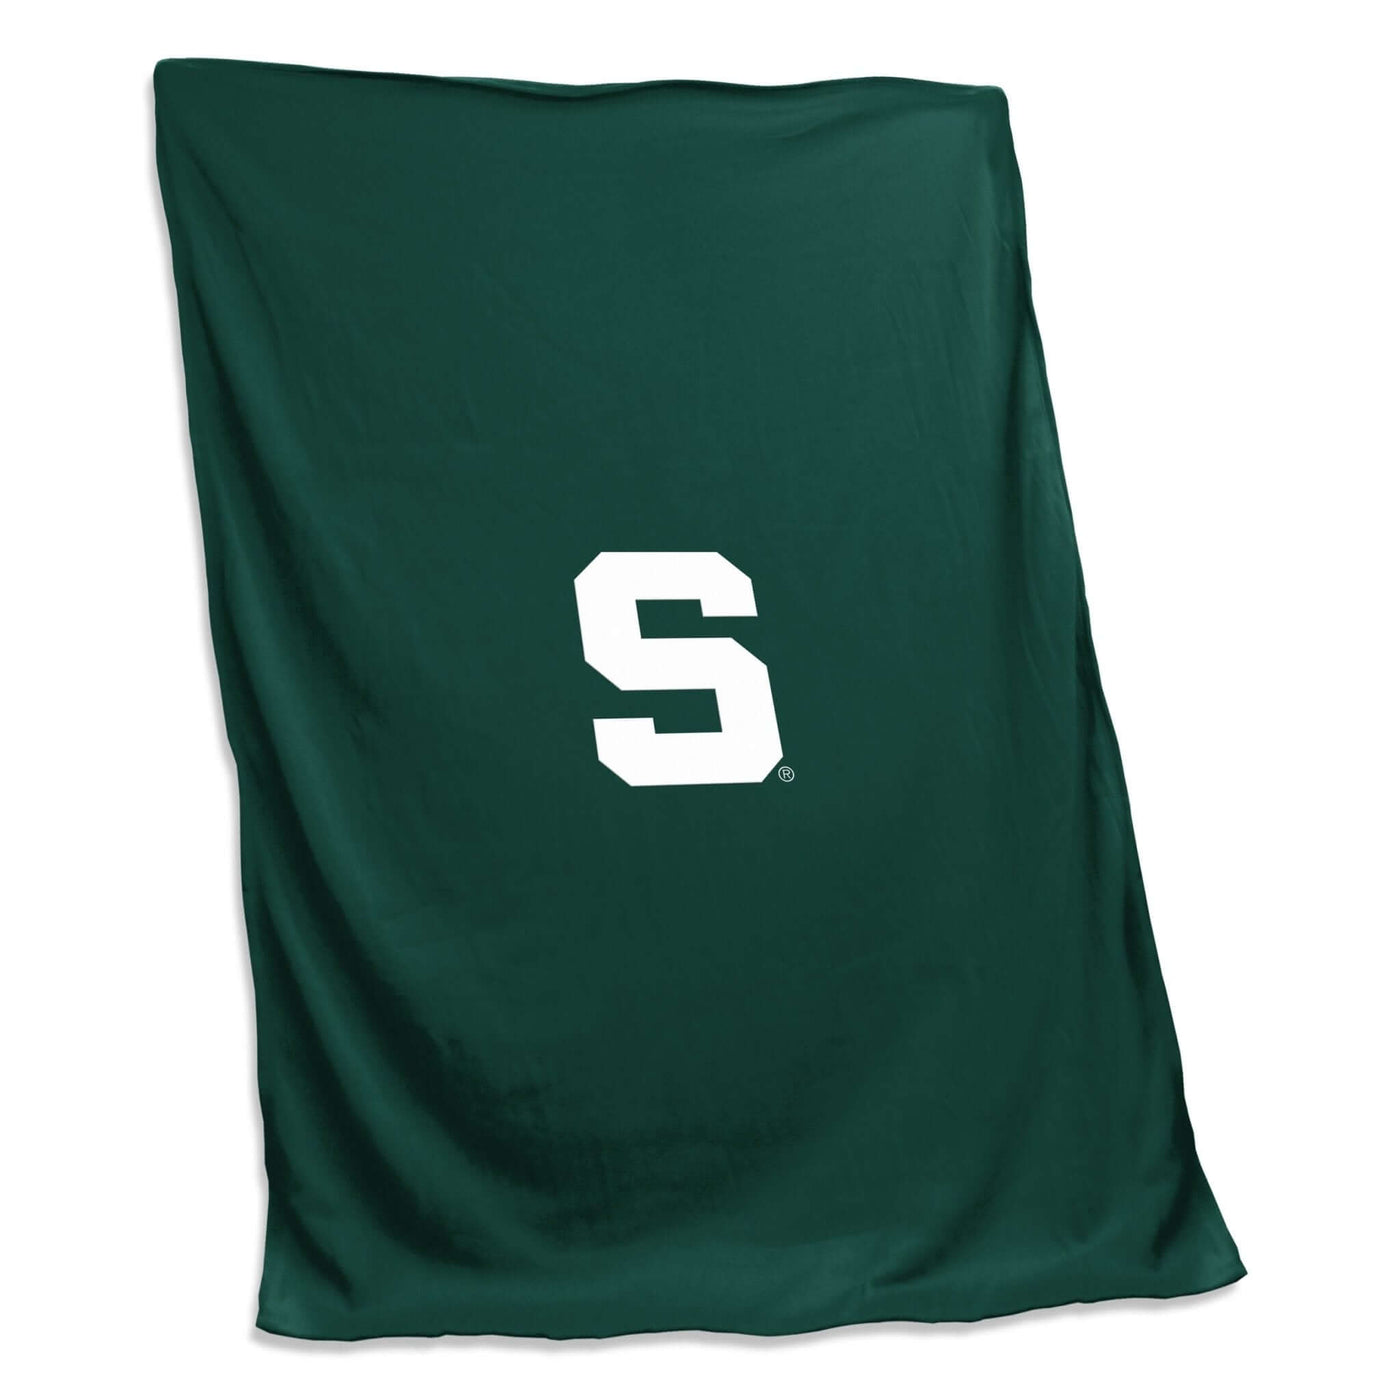 MI State Sweatshirt Blanket - Logo Brands